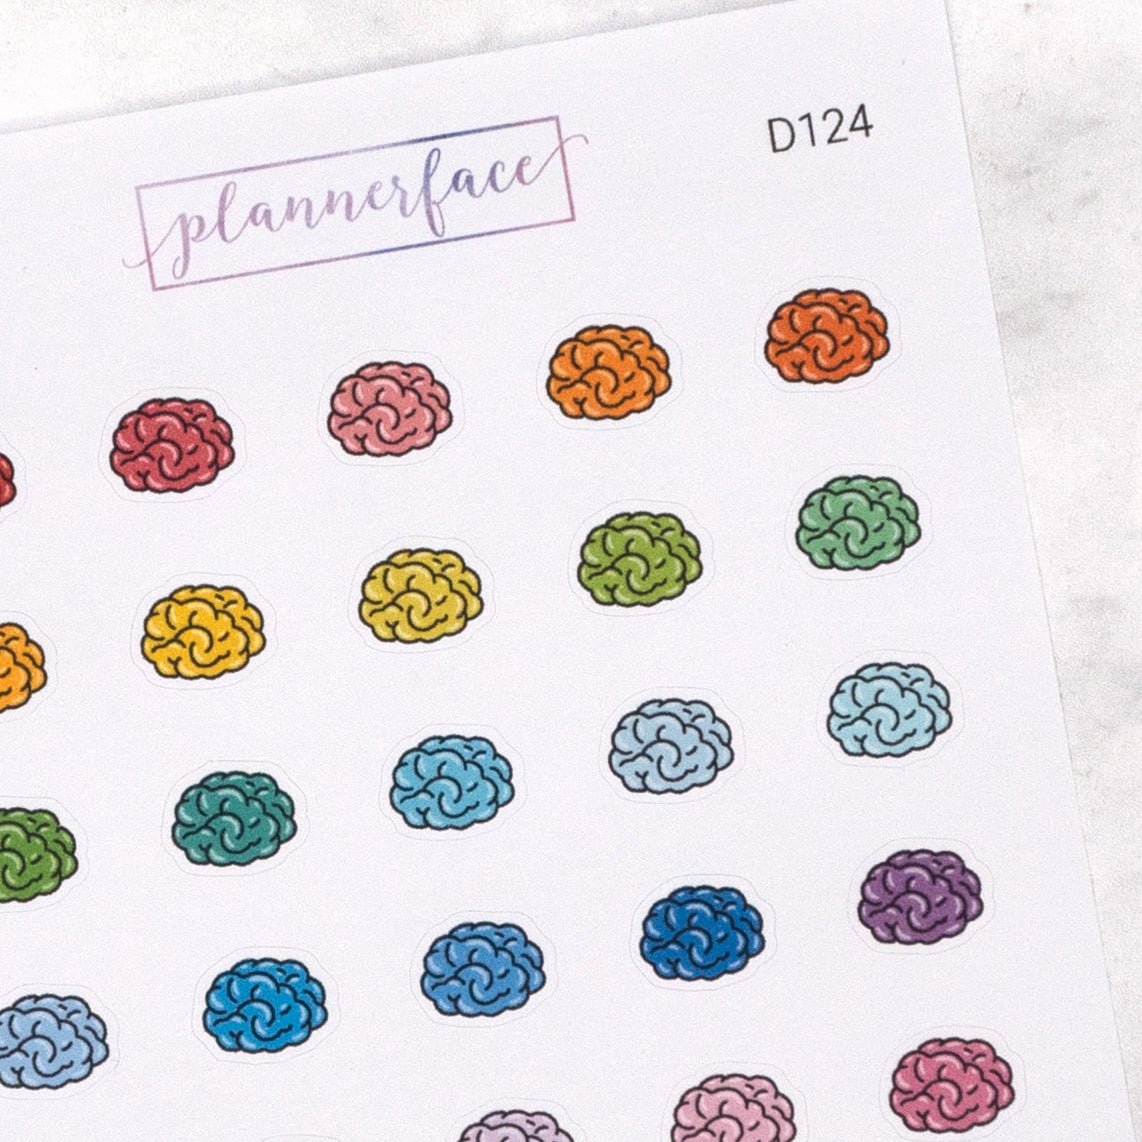 Brain Multicolour Doodles by Plannerface